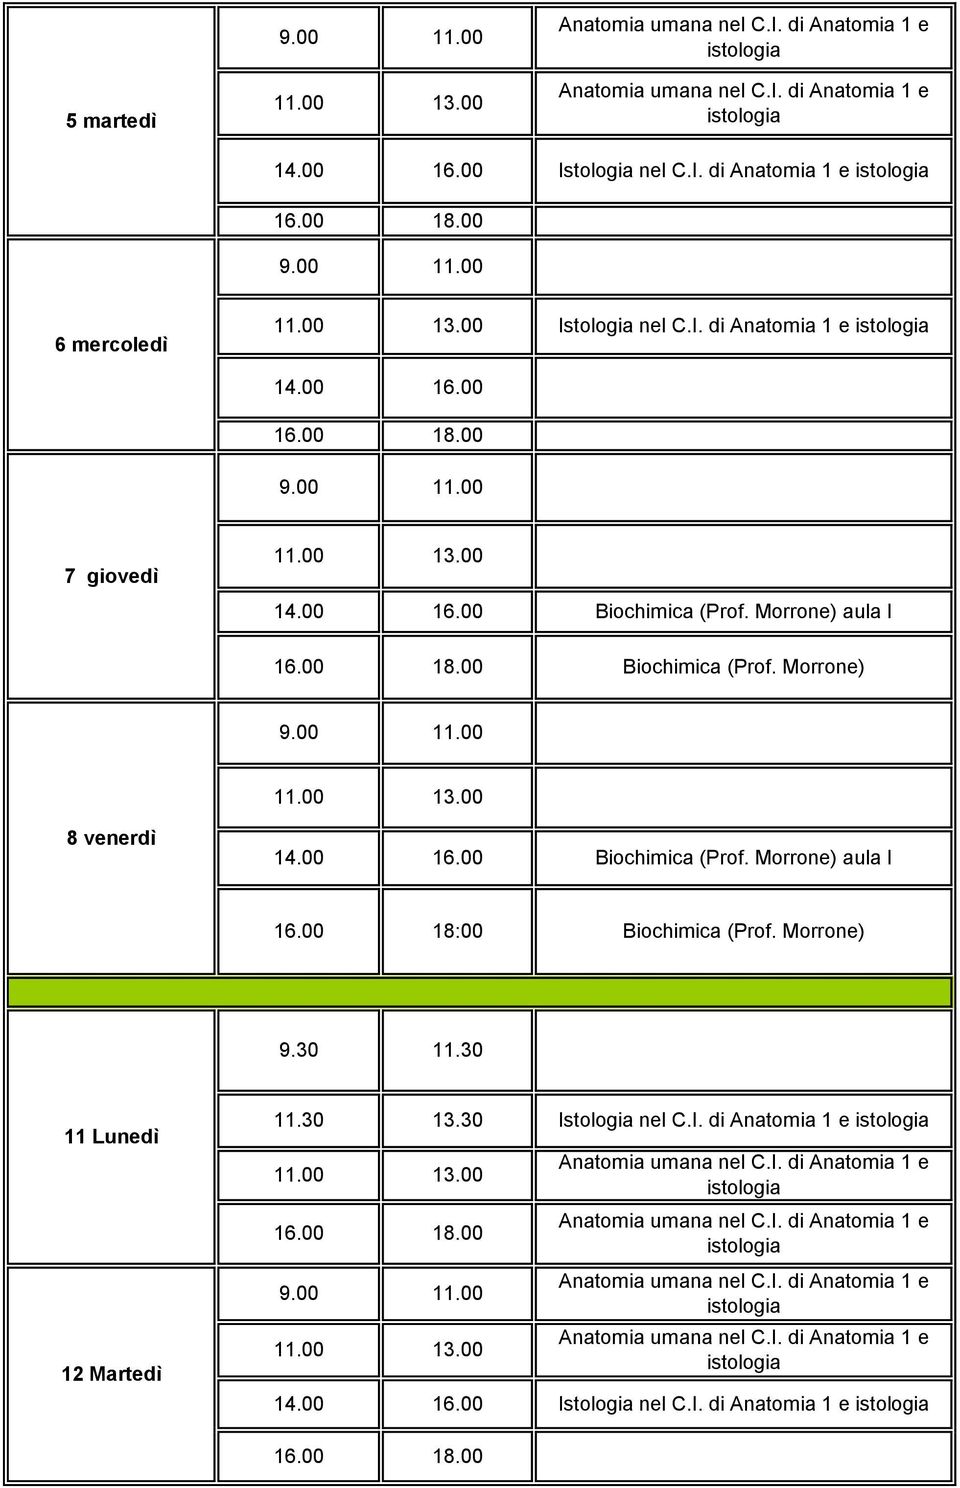 Morrone) 8 venerdì Biochimica (Prof. Morrone) aula I 16.00 18:00 Biochimica (Prof.